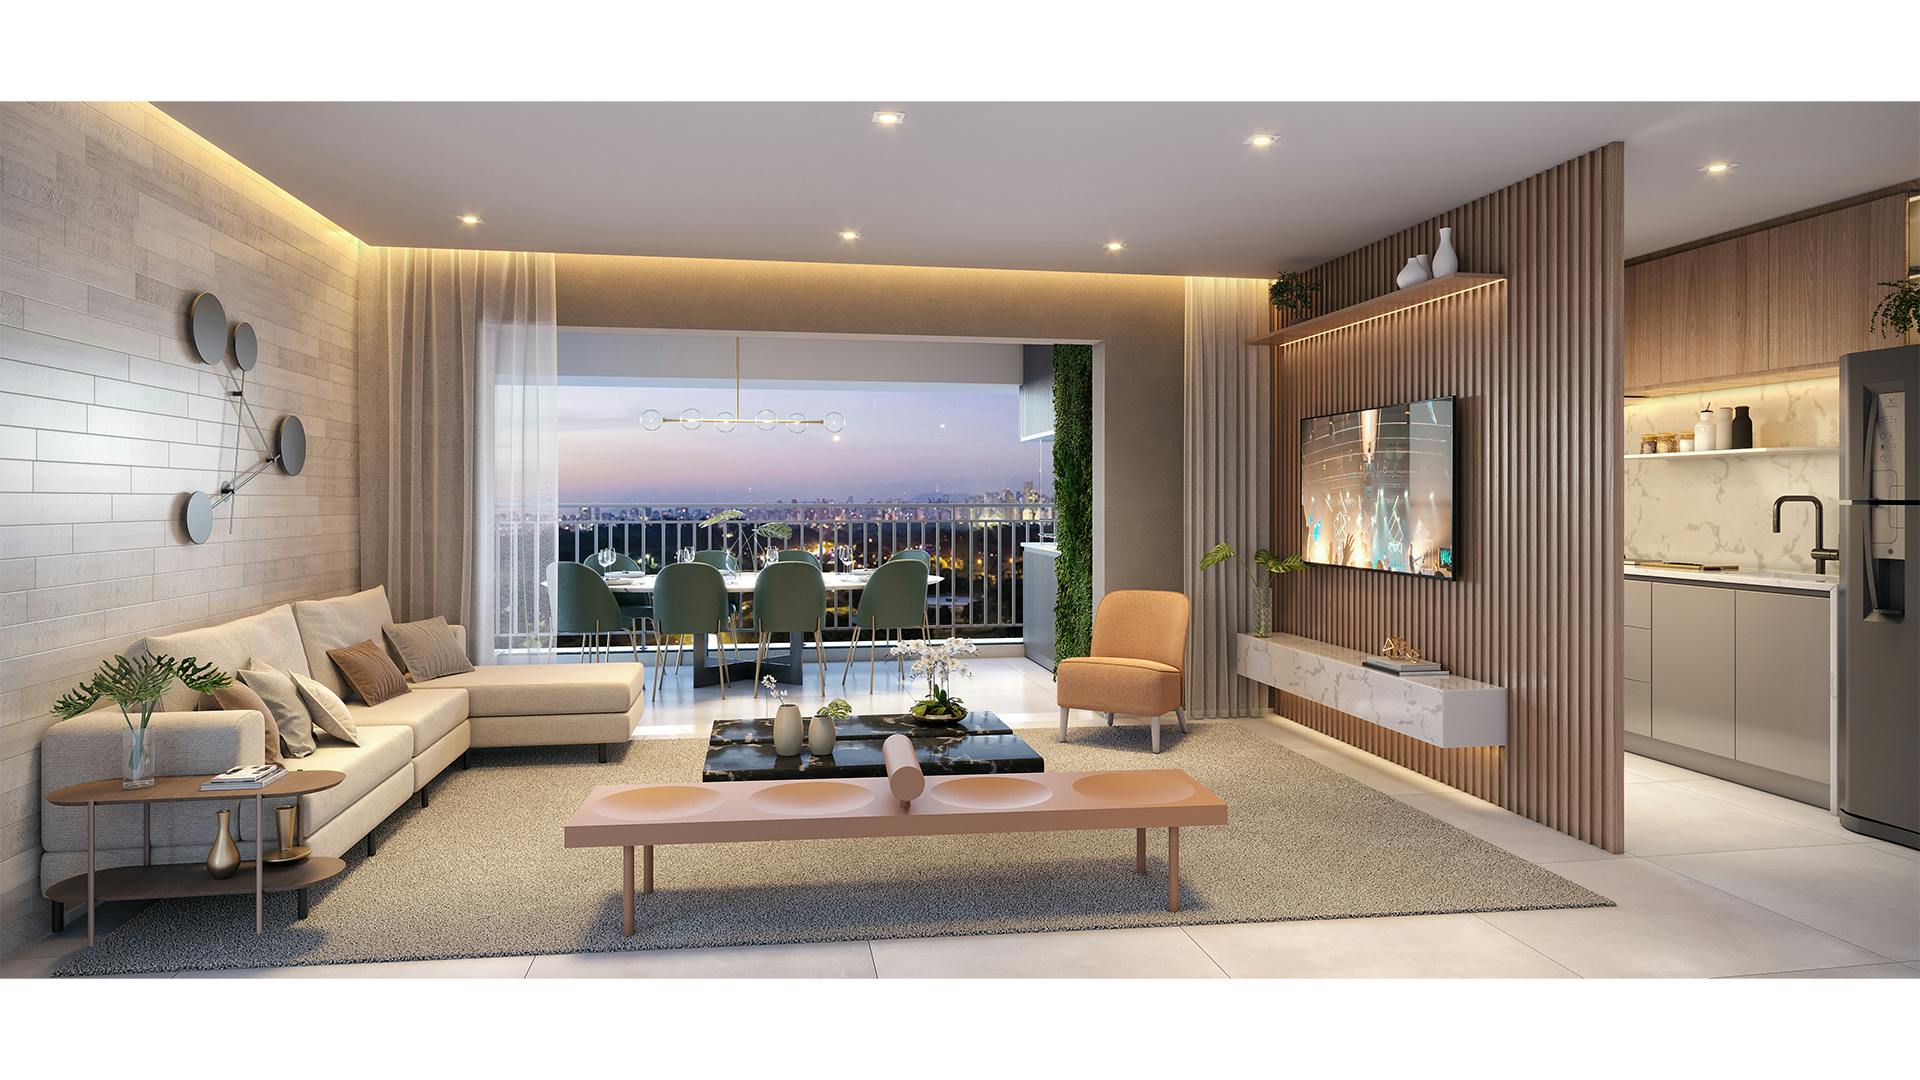 Imagem 3D do Living do Apartamento de 3 dormitórios da torre ML Selection